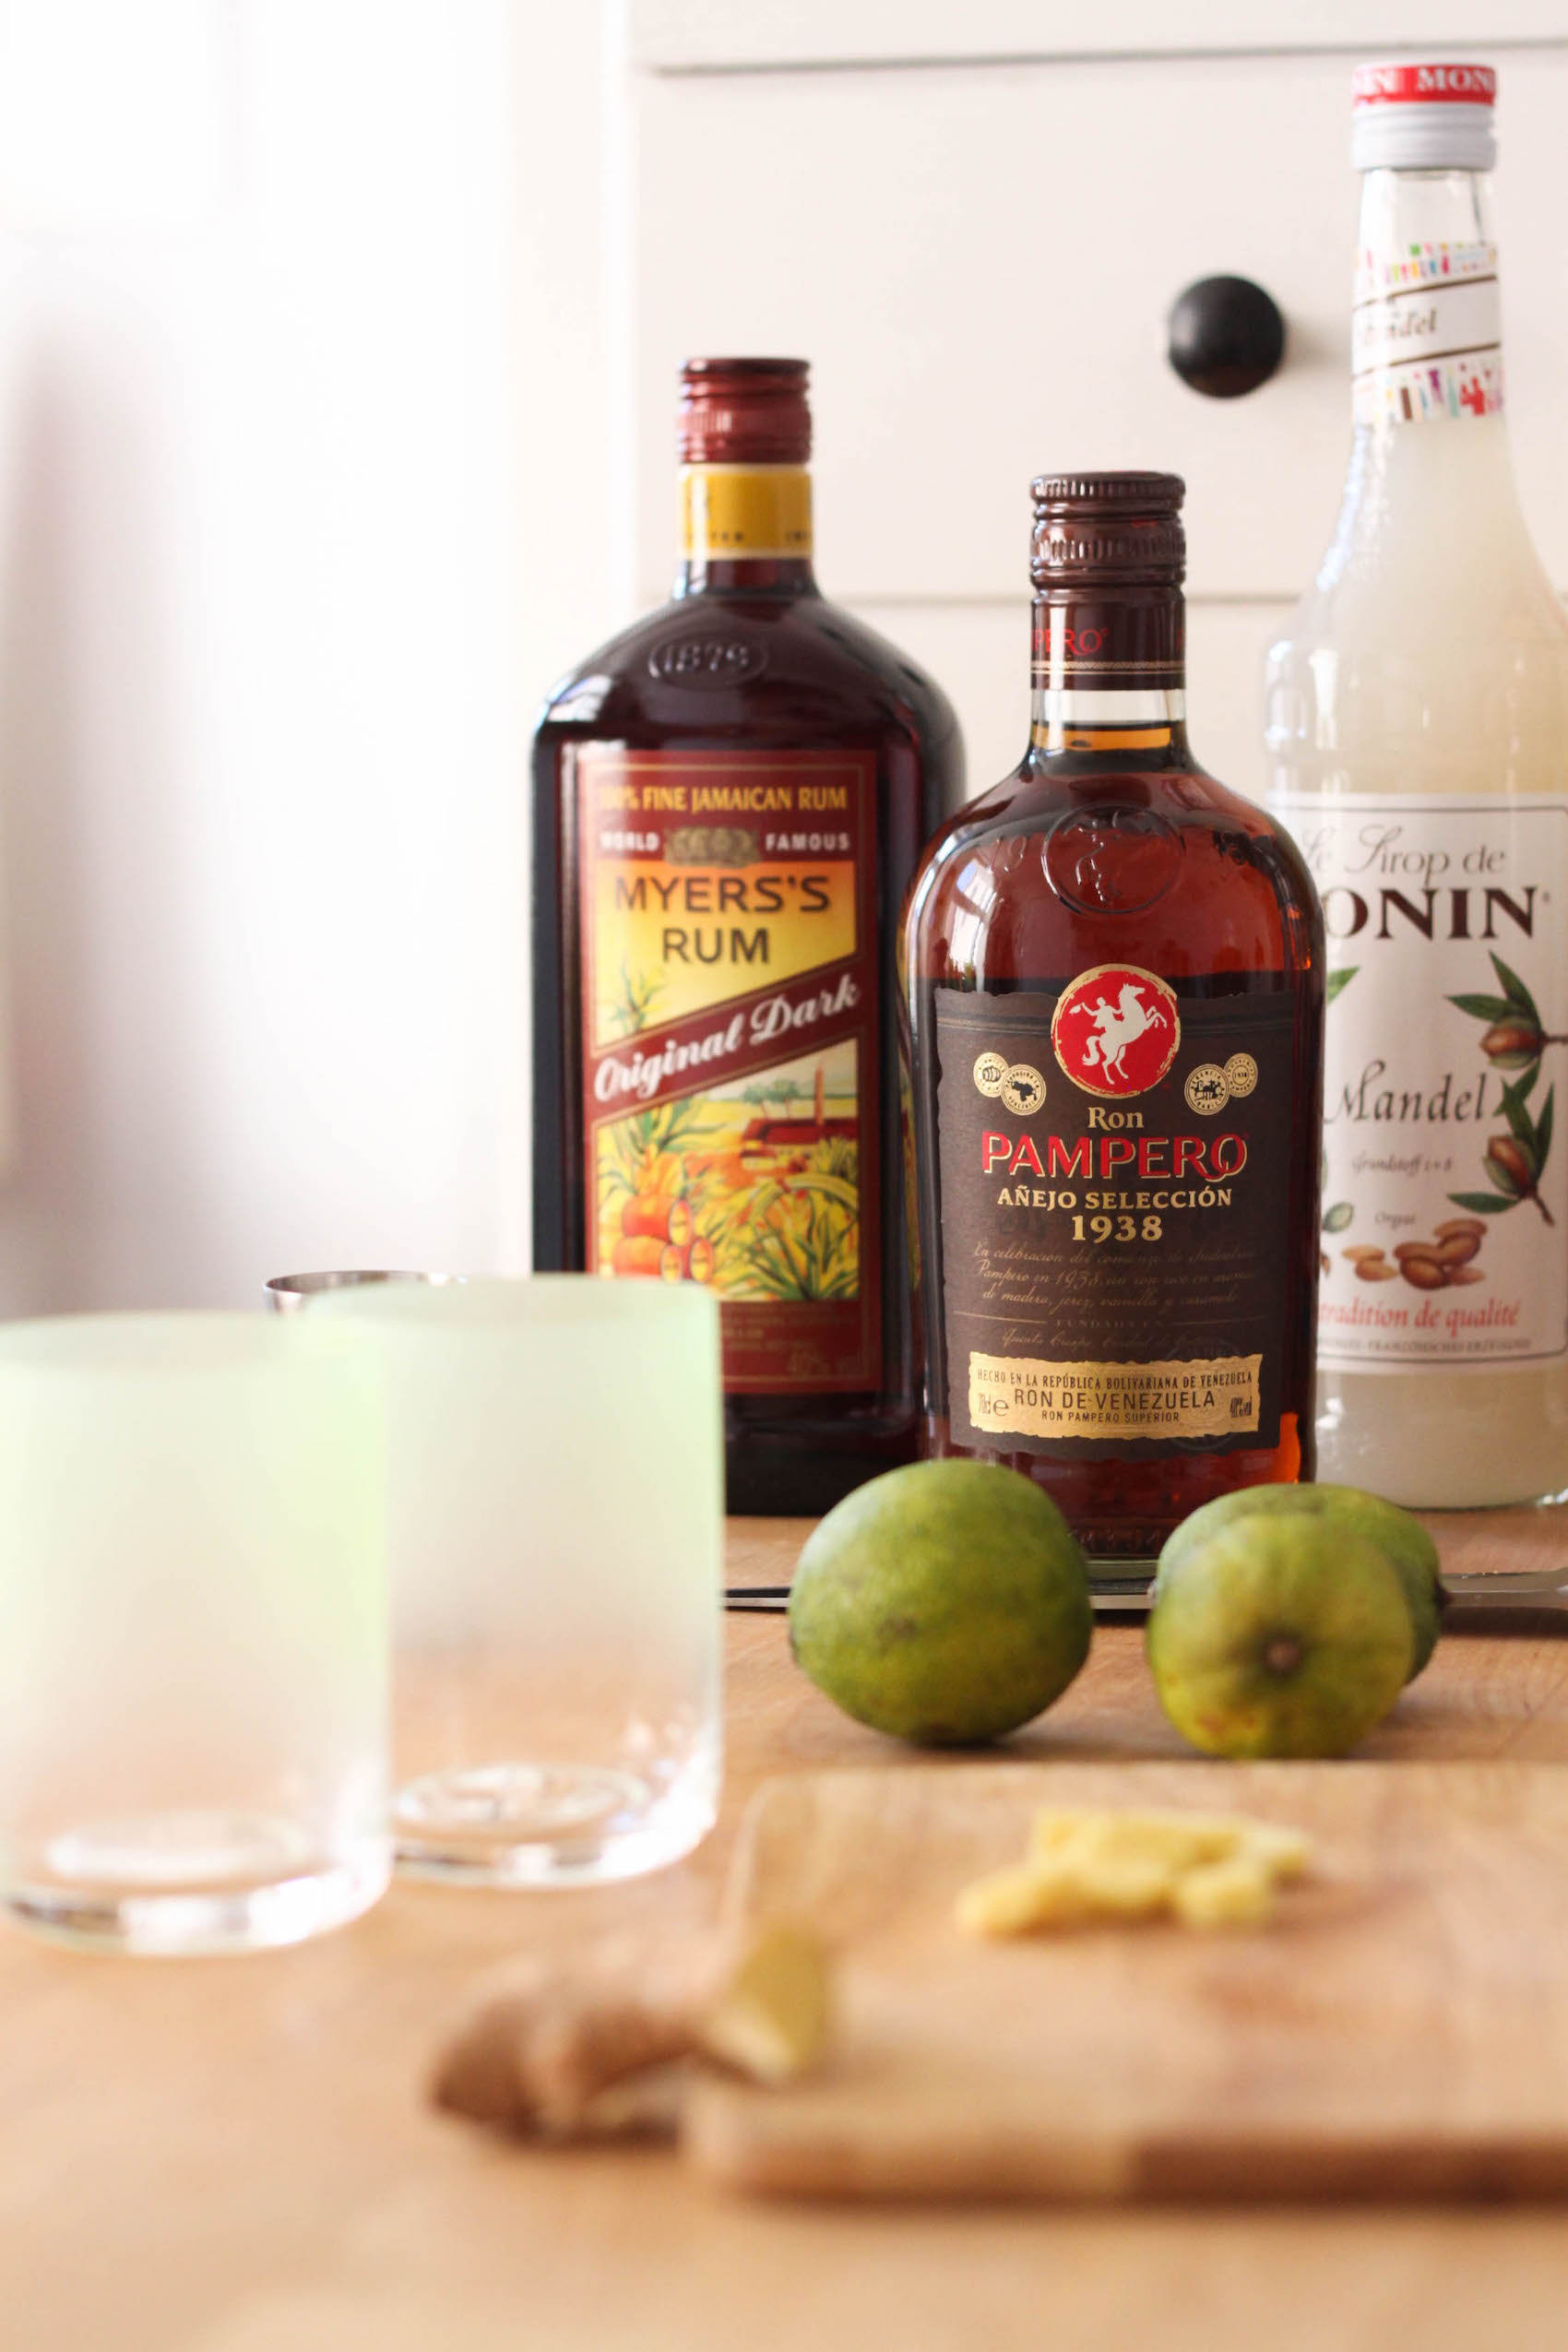 Meyer's Dark Rum and Añejo rum (Eat Me. Drink Me.)